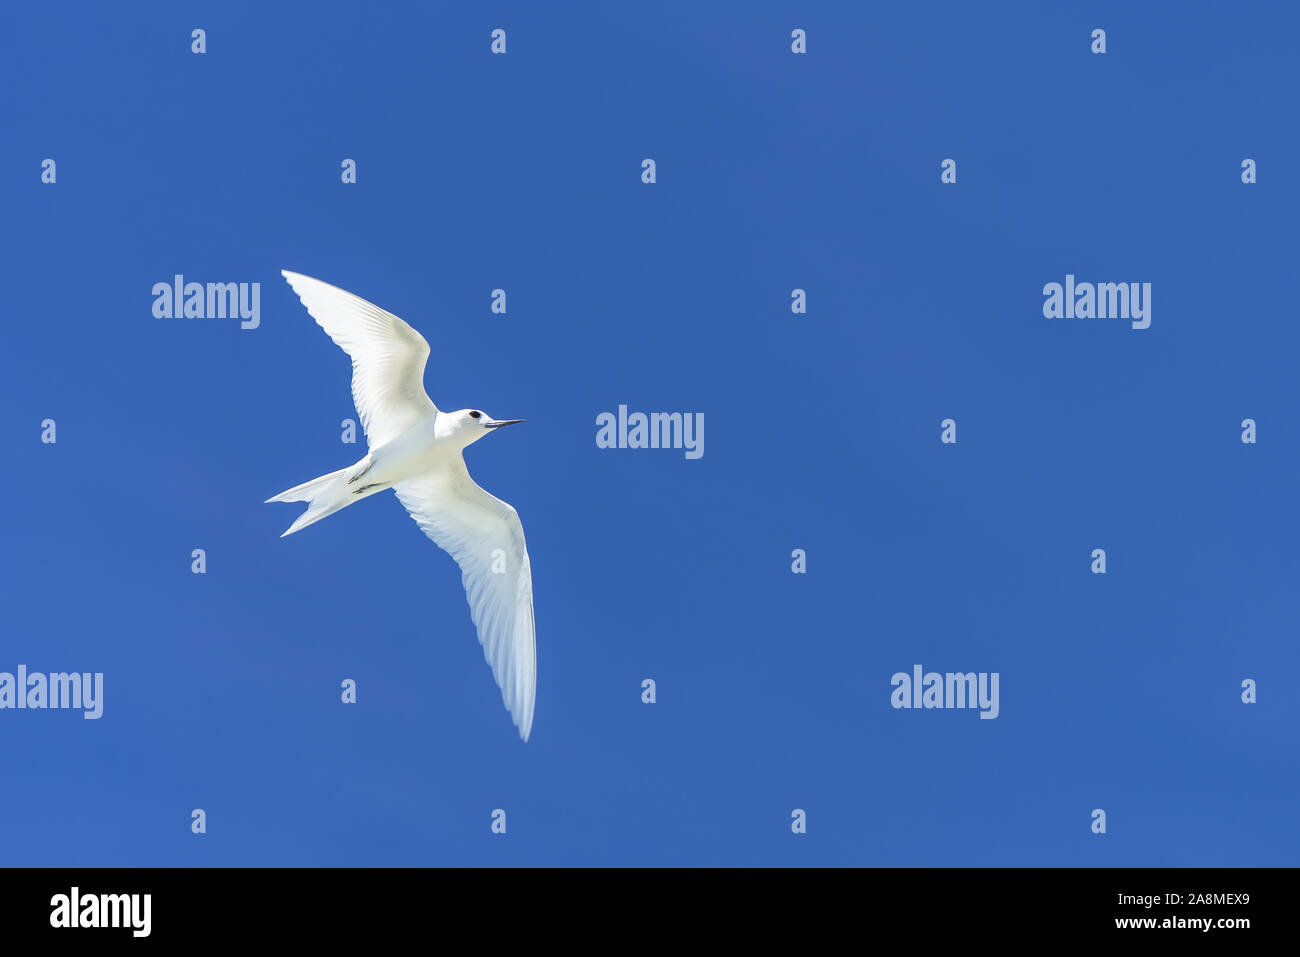 Blanc, magnifique oiseau blanc volant dans le ciel bleu, symbole de paix Banque D'Images